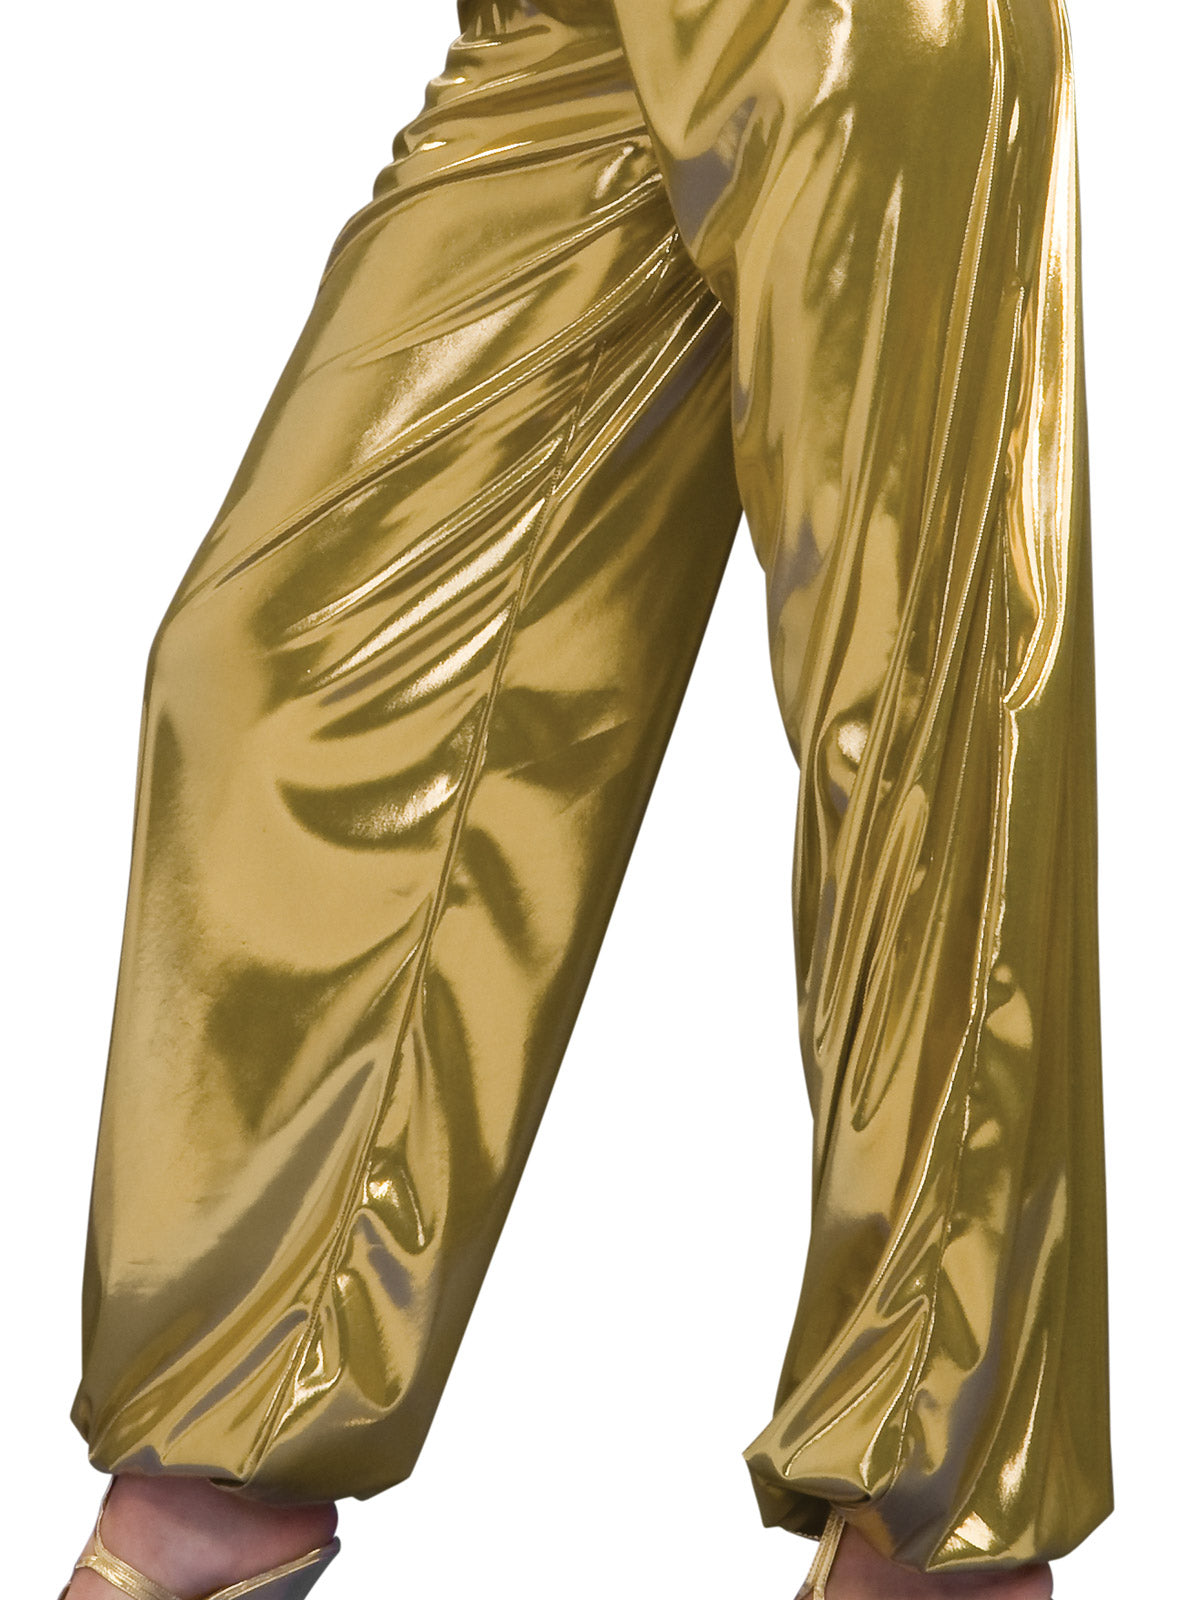 1980's Disco Solid Gold Diva Women's Costume Dncing Queen